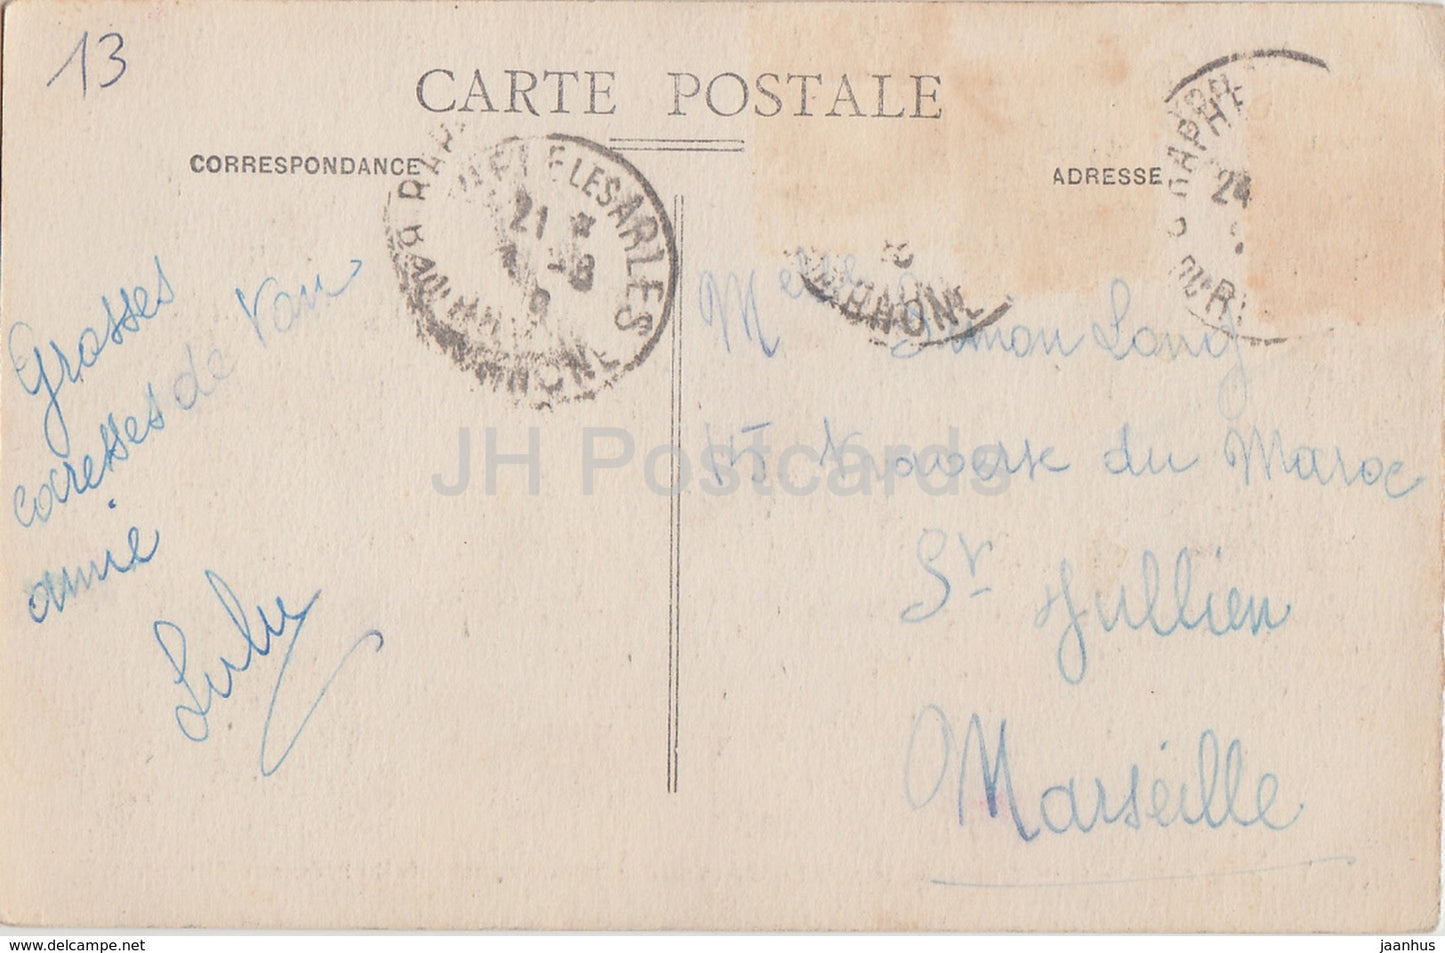 Arles - Fassade der Kathedrale St. Trophime - Kathedrale - 91 - alte Postkarte - Frankreich - gebraucht